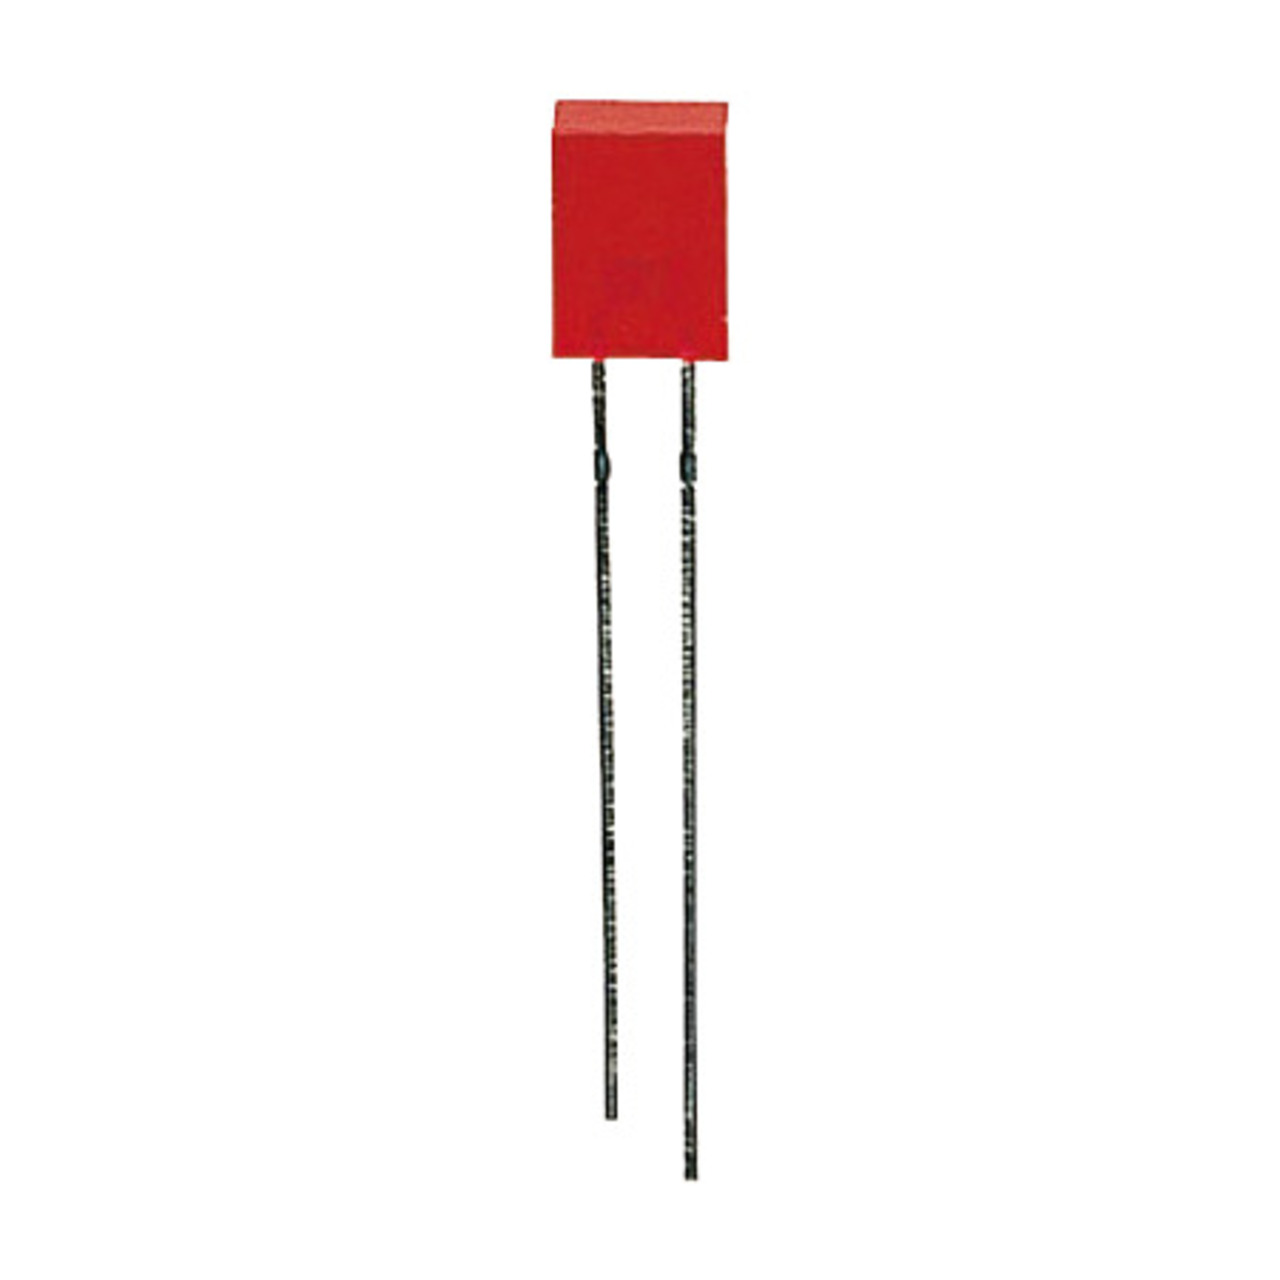 10x LED Rechteck 2-5 x 5 mm- Rot